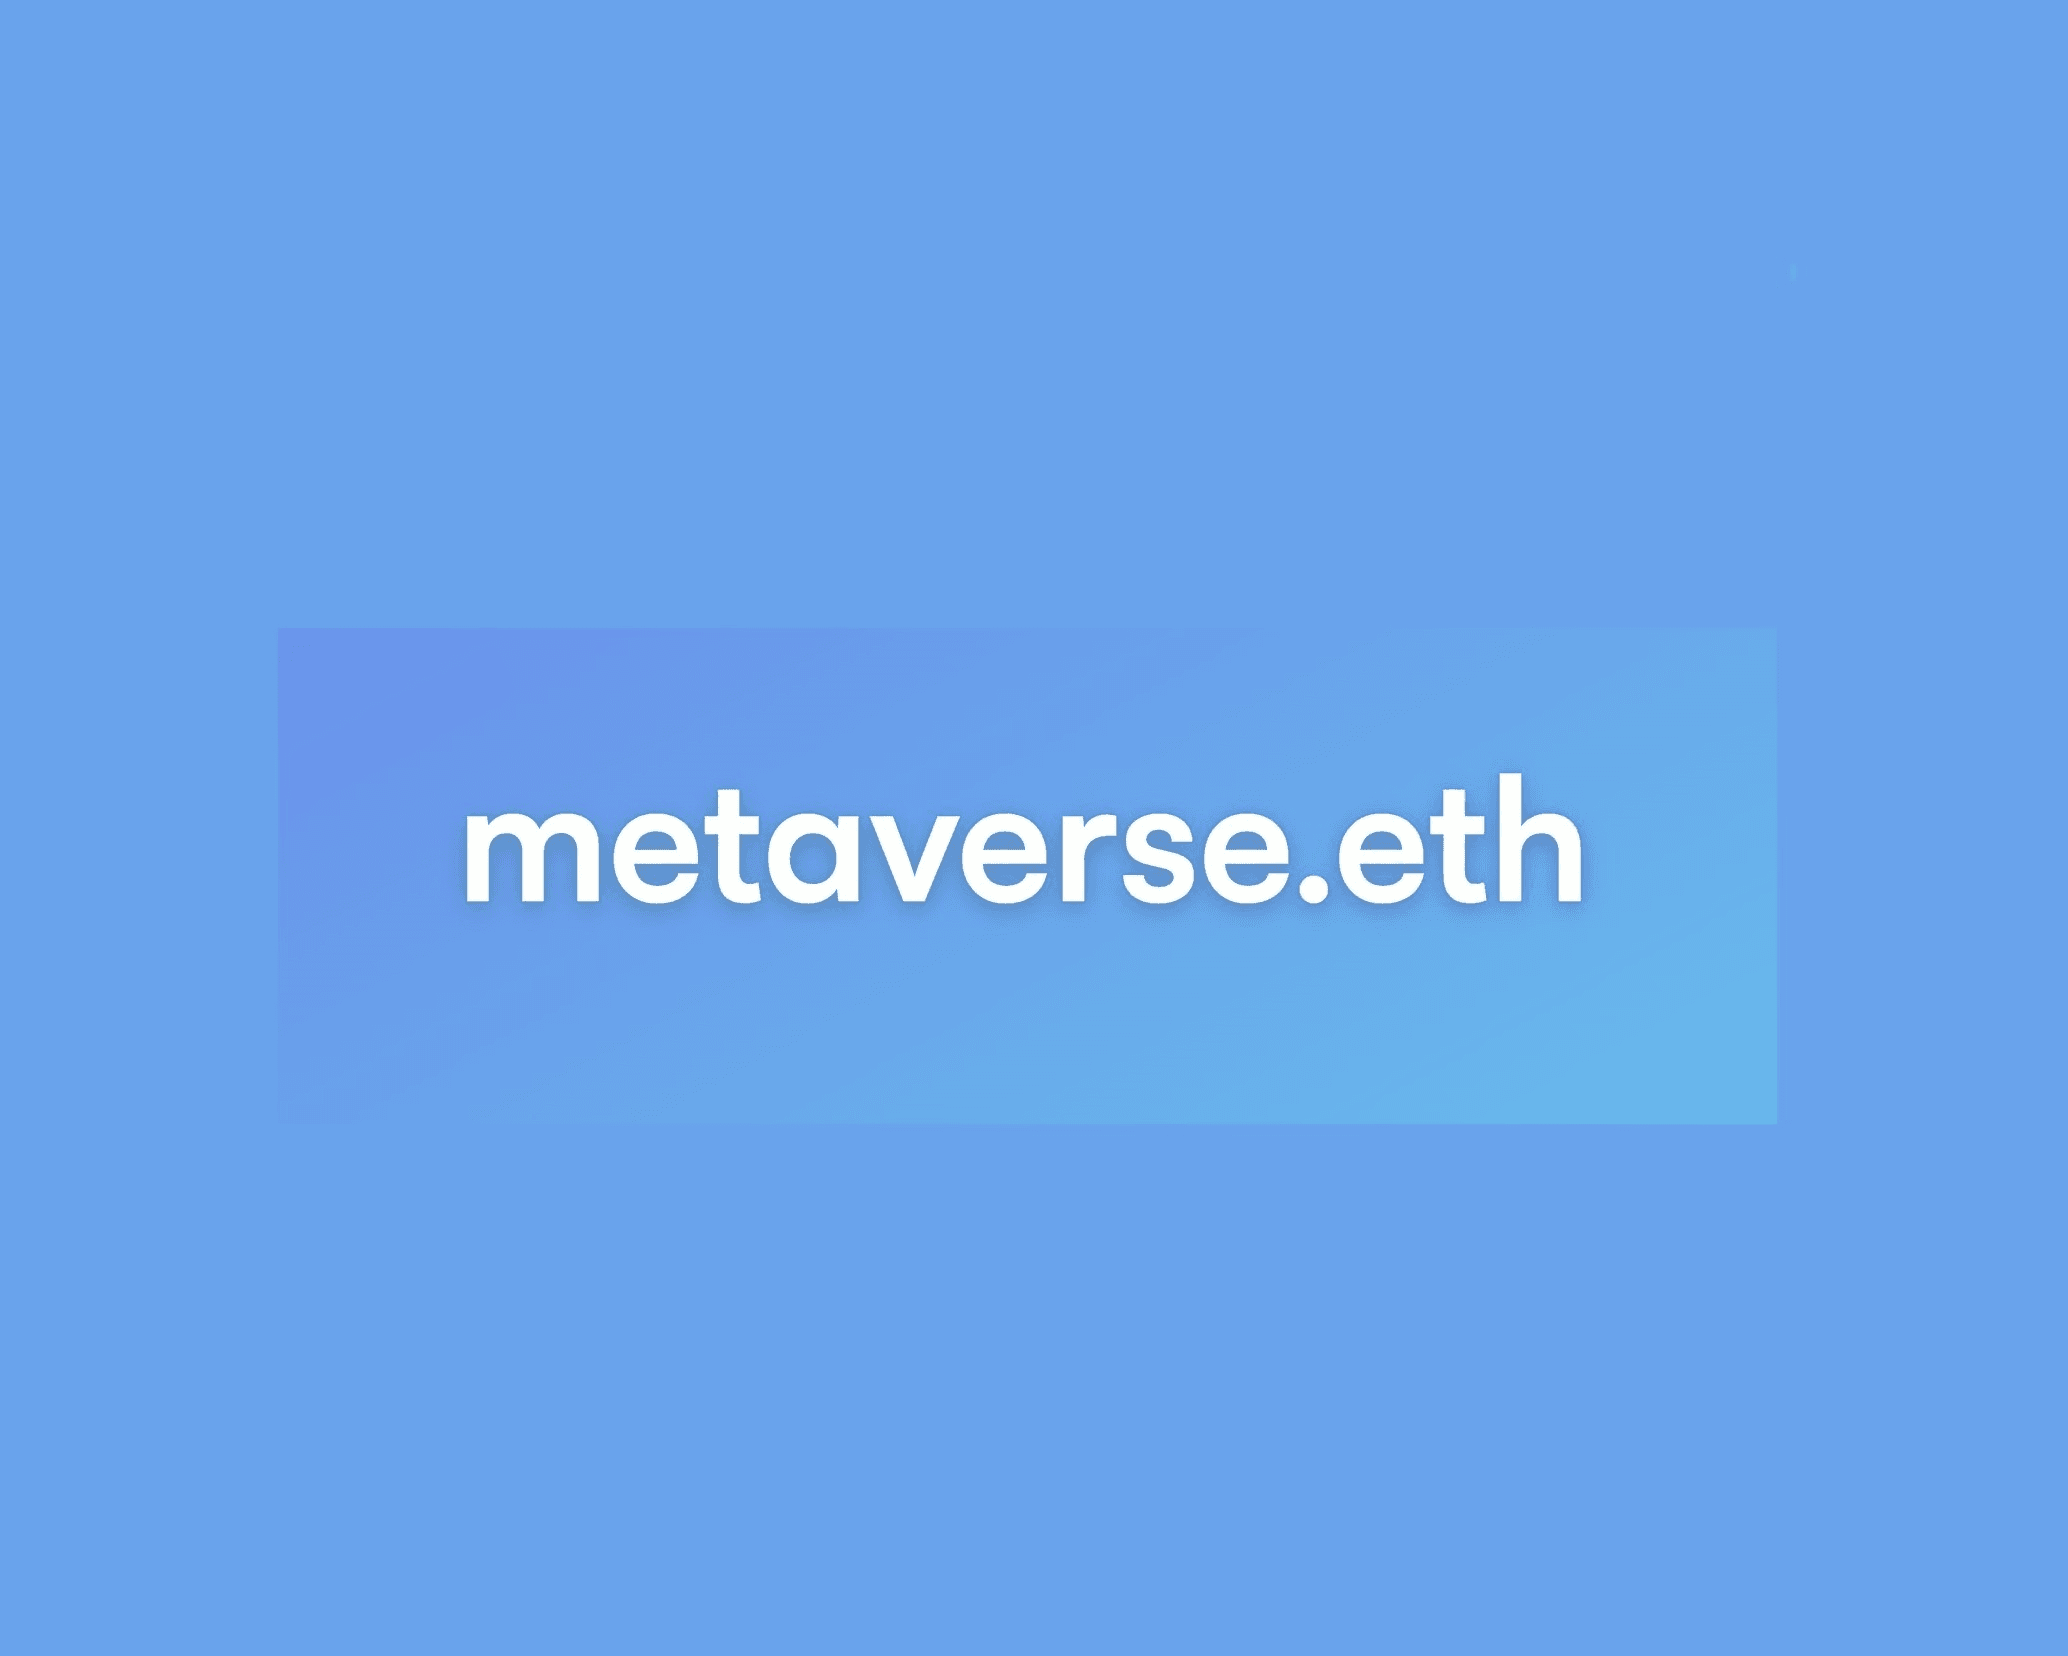 metaversedoteth